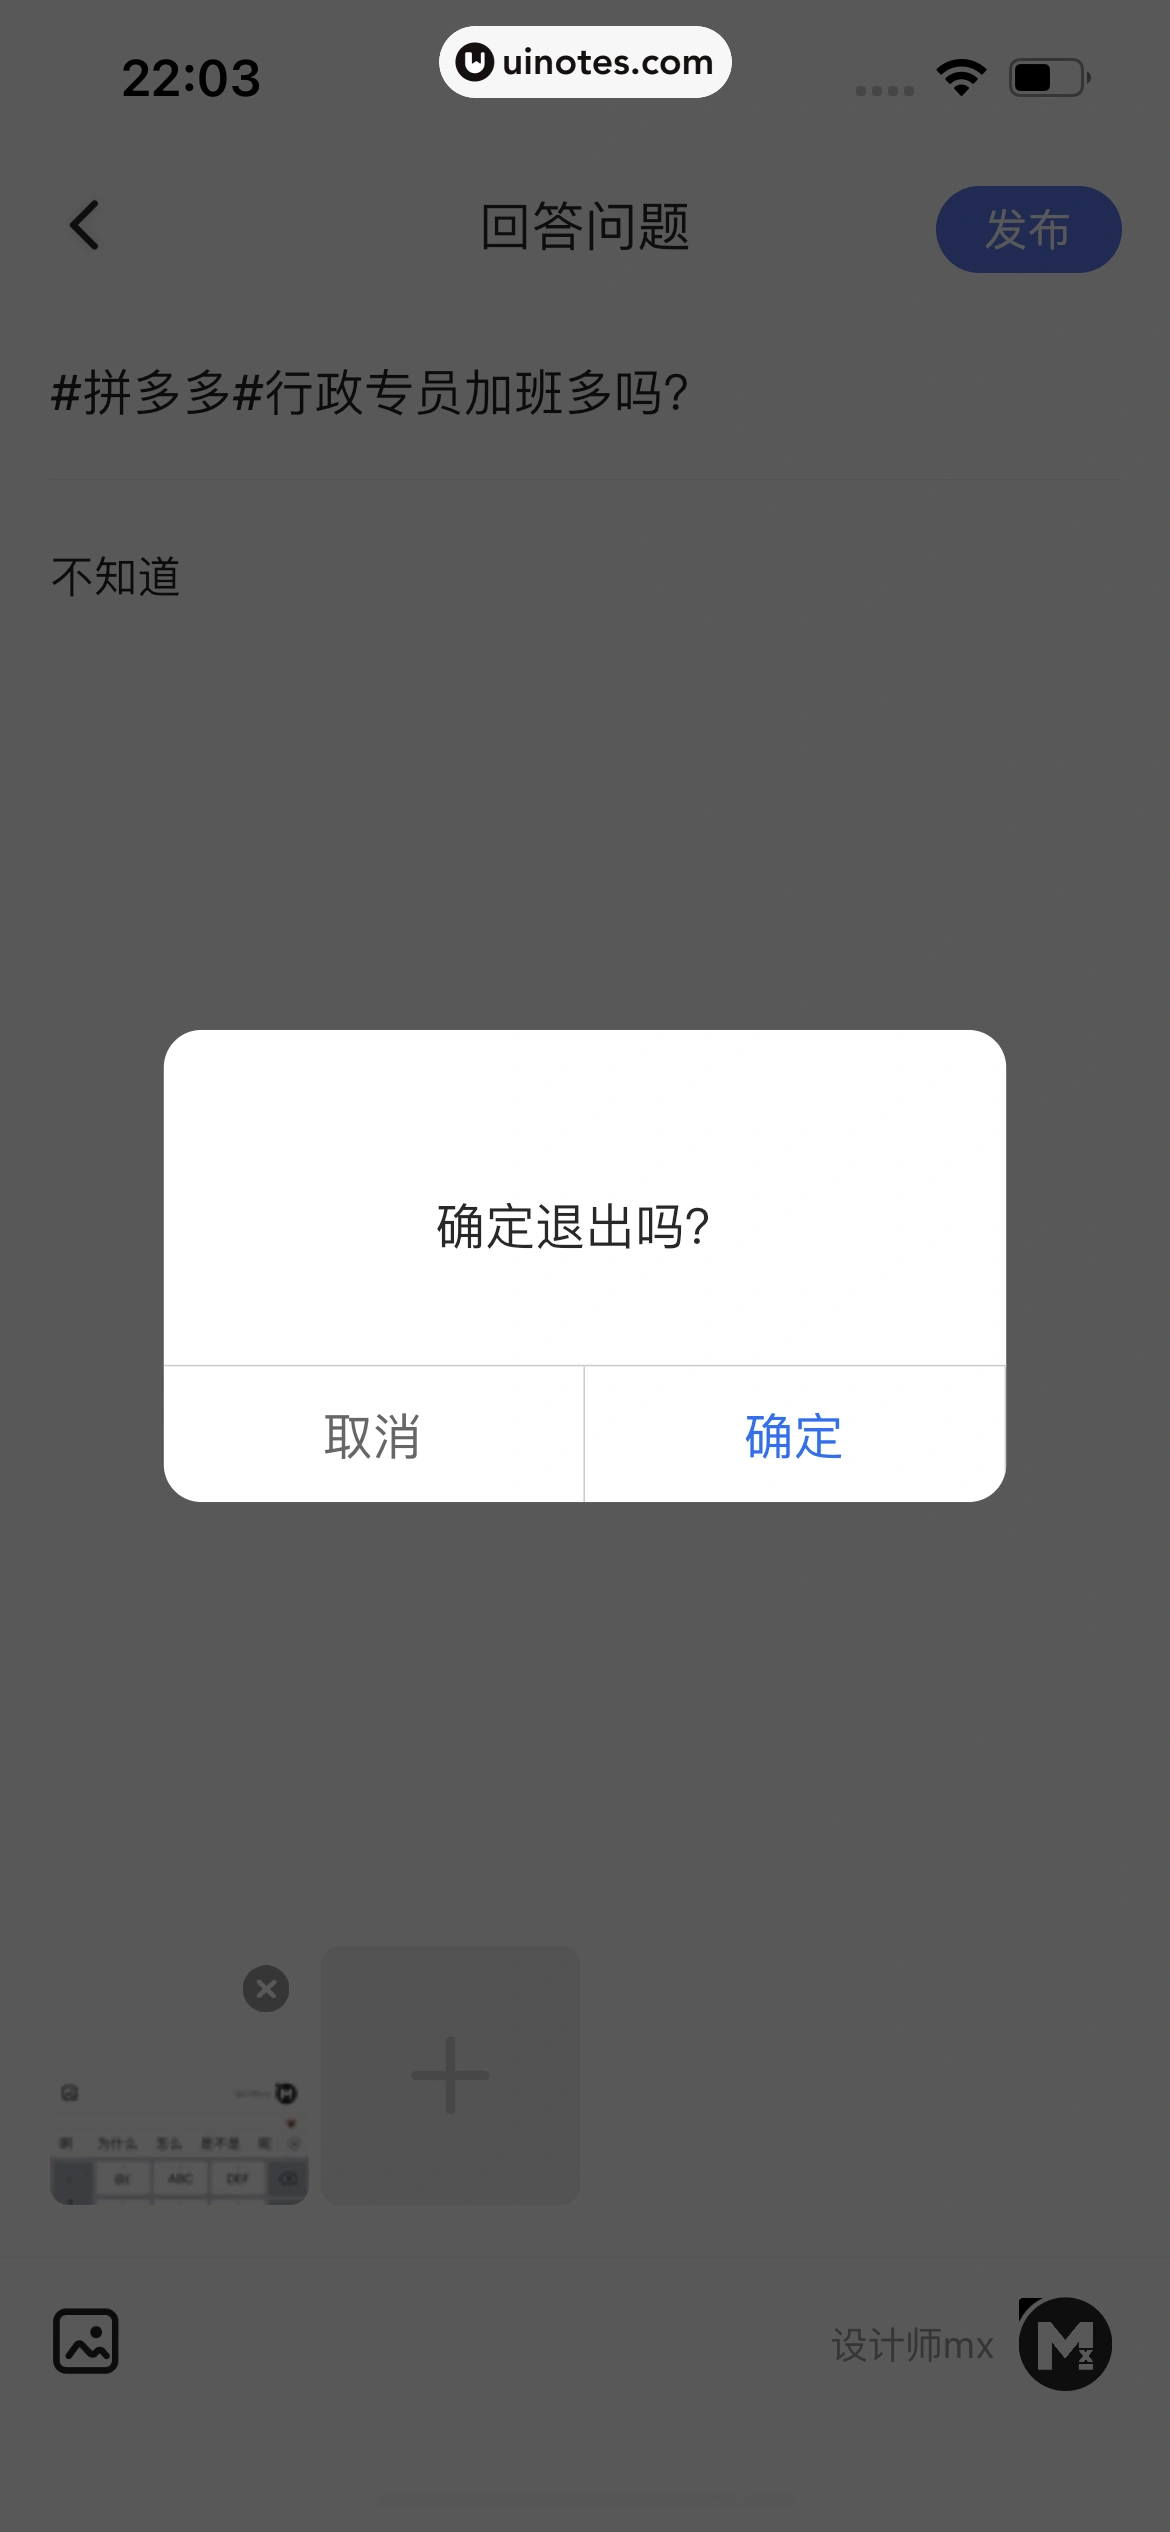 智联招聘 App 截图 097 - UI Notes